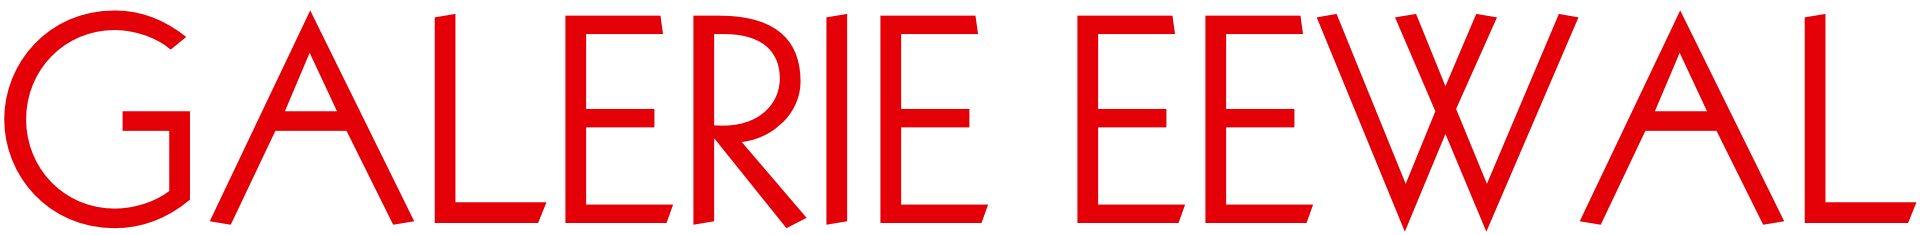 galerie eewal logo